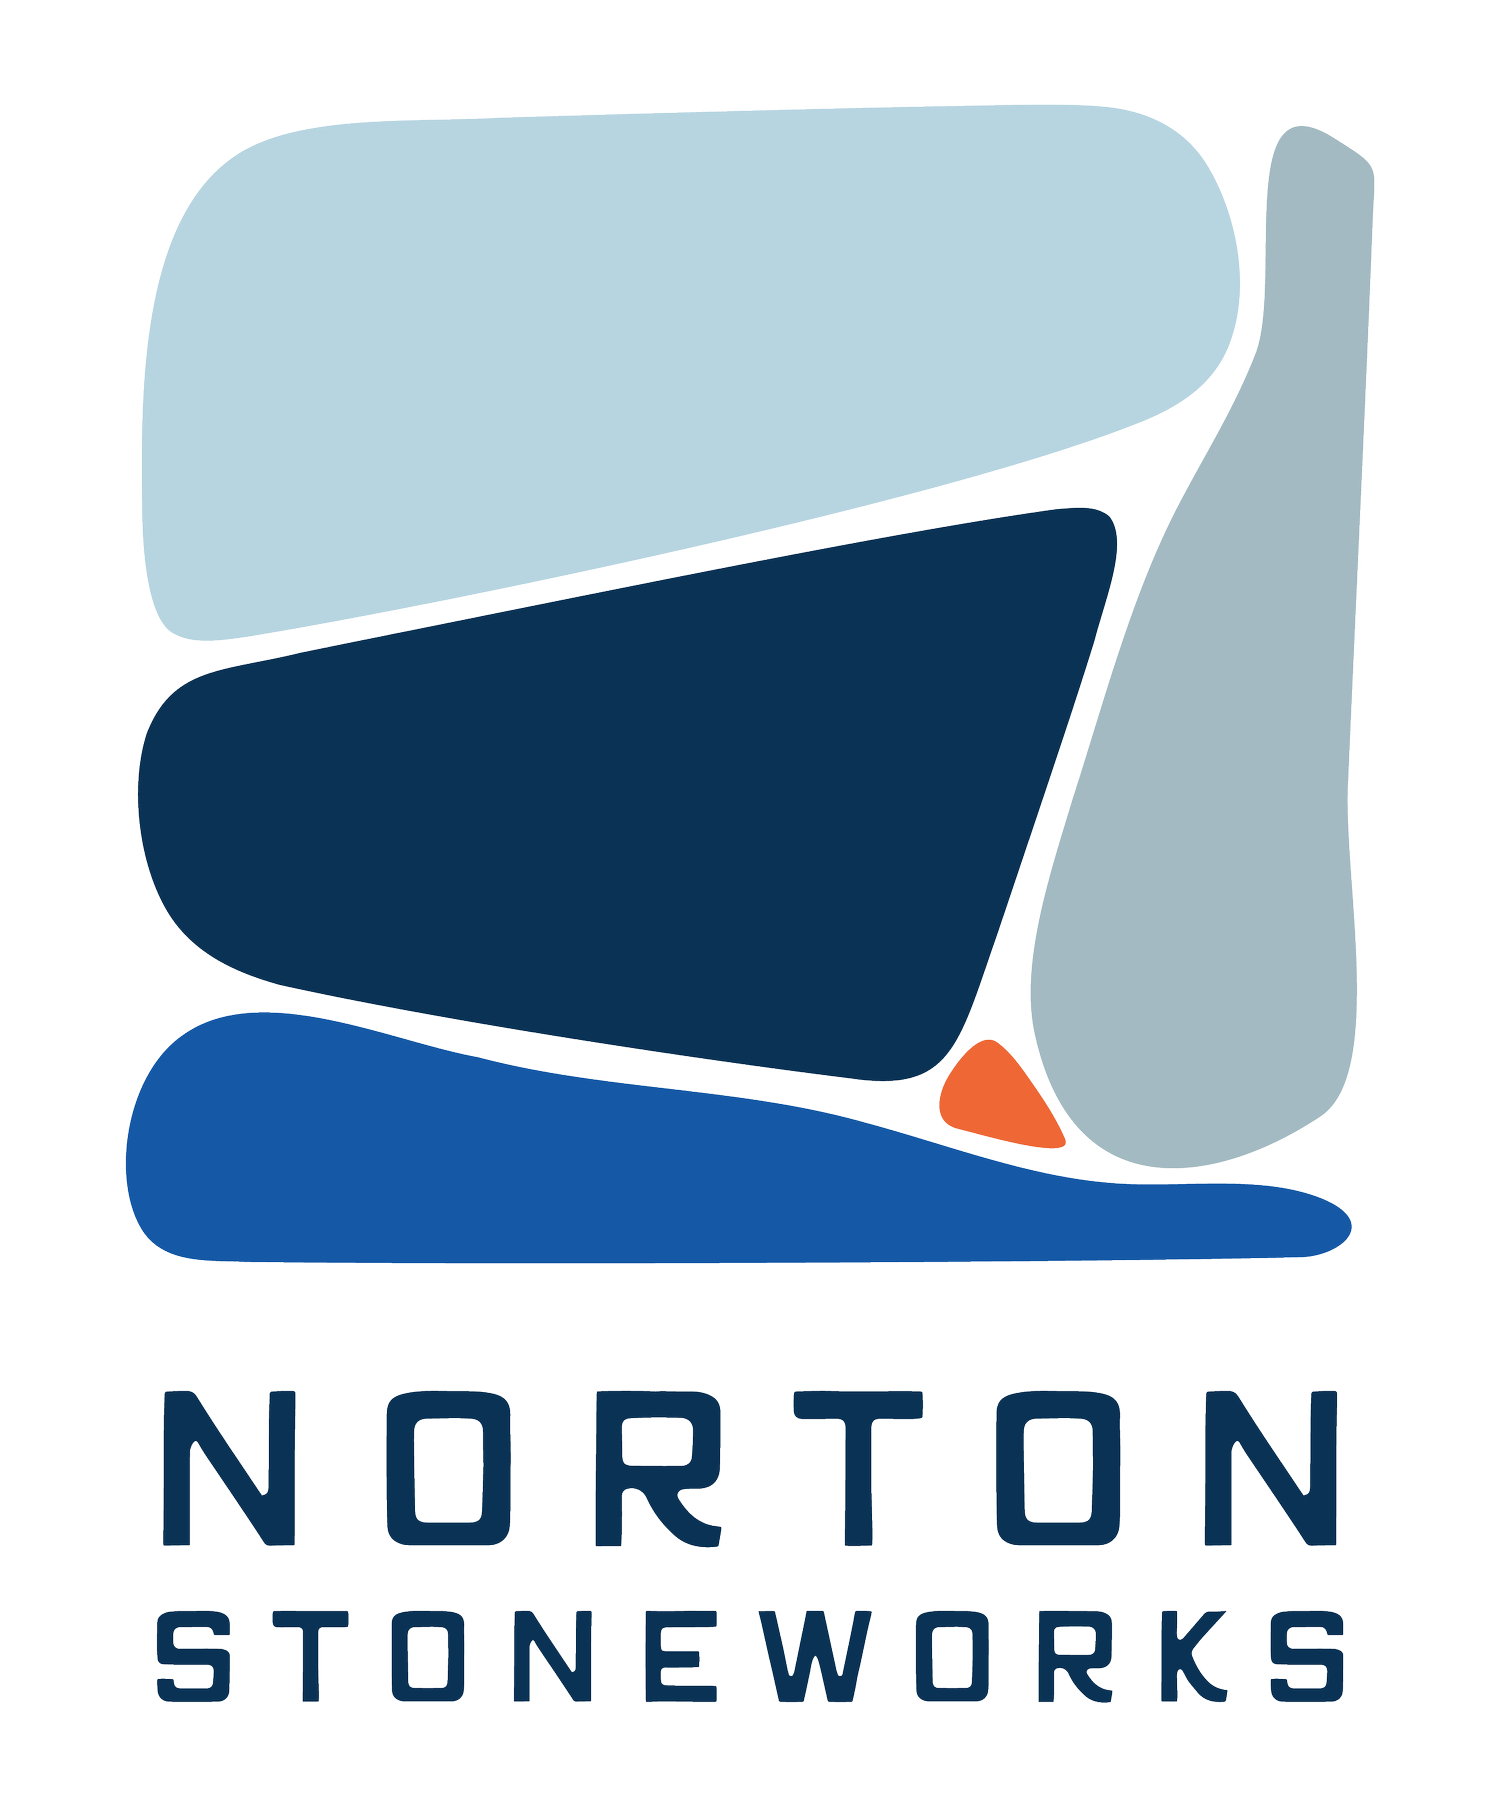 Norton Stoneworks